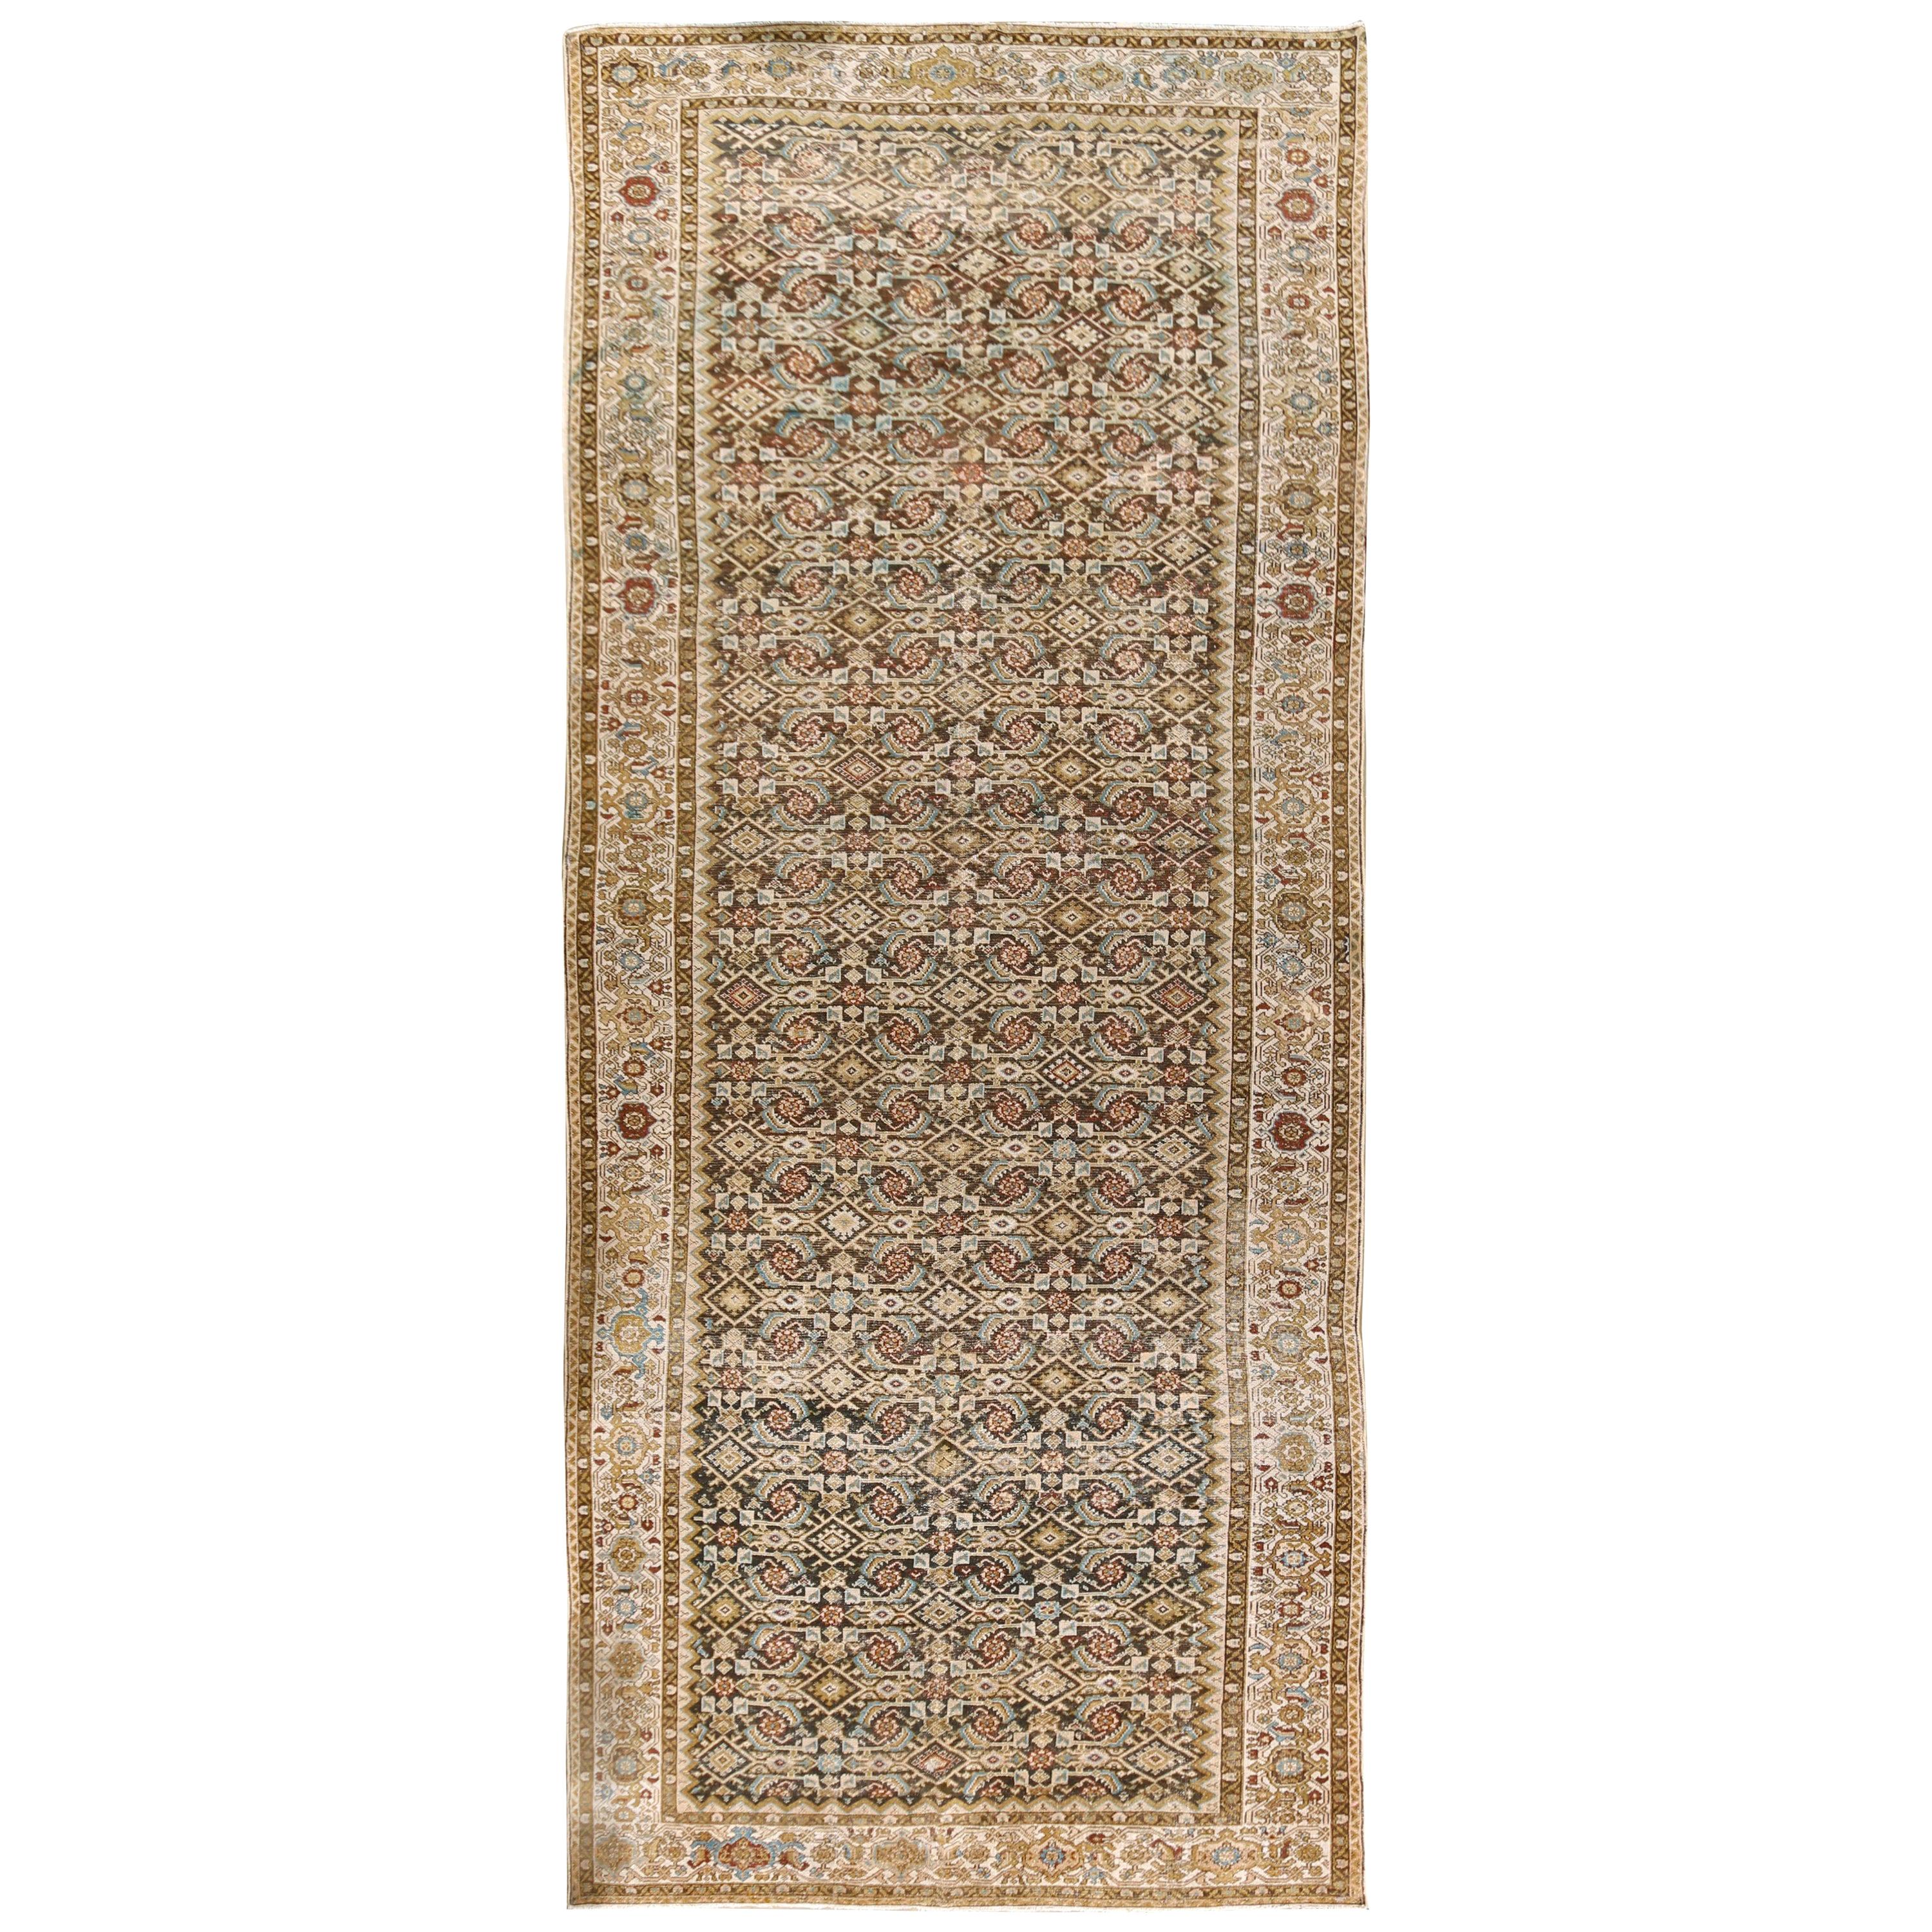 Antique Persian Malayer Corridor Carpet Rug, circa 1900, 7'1 x 17'11 For Sale